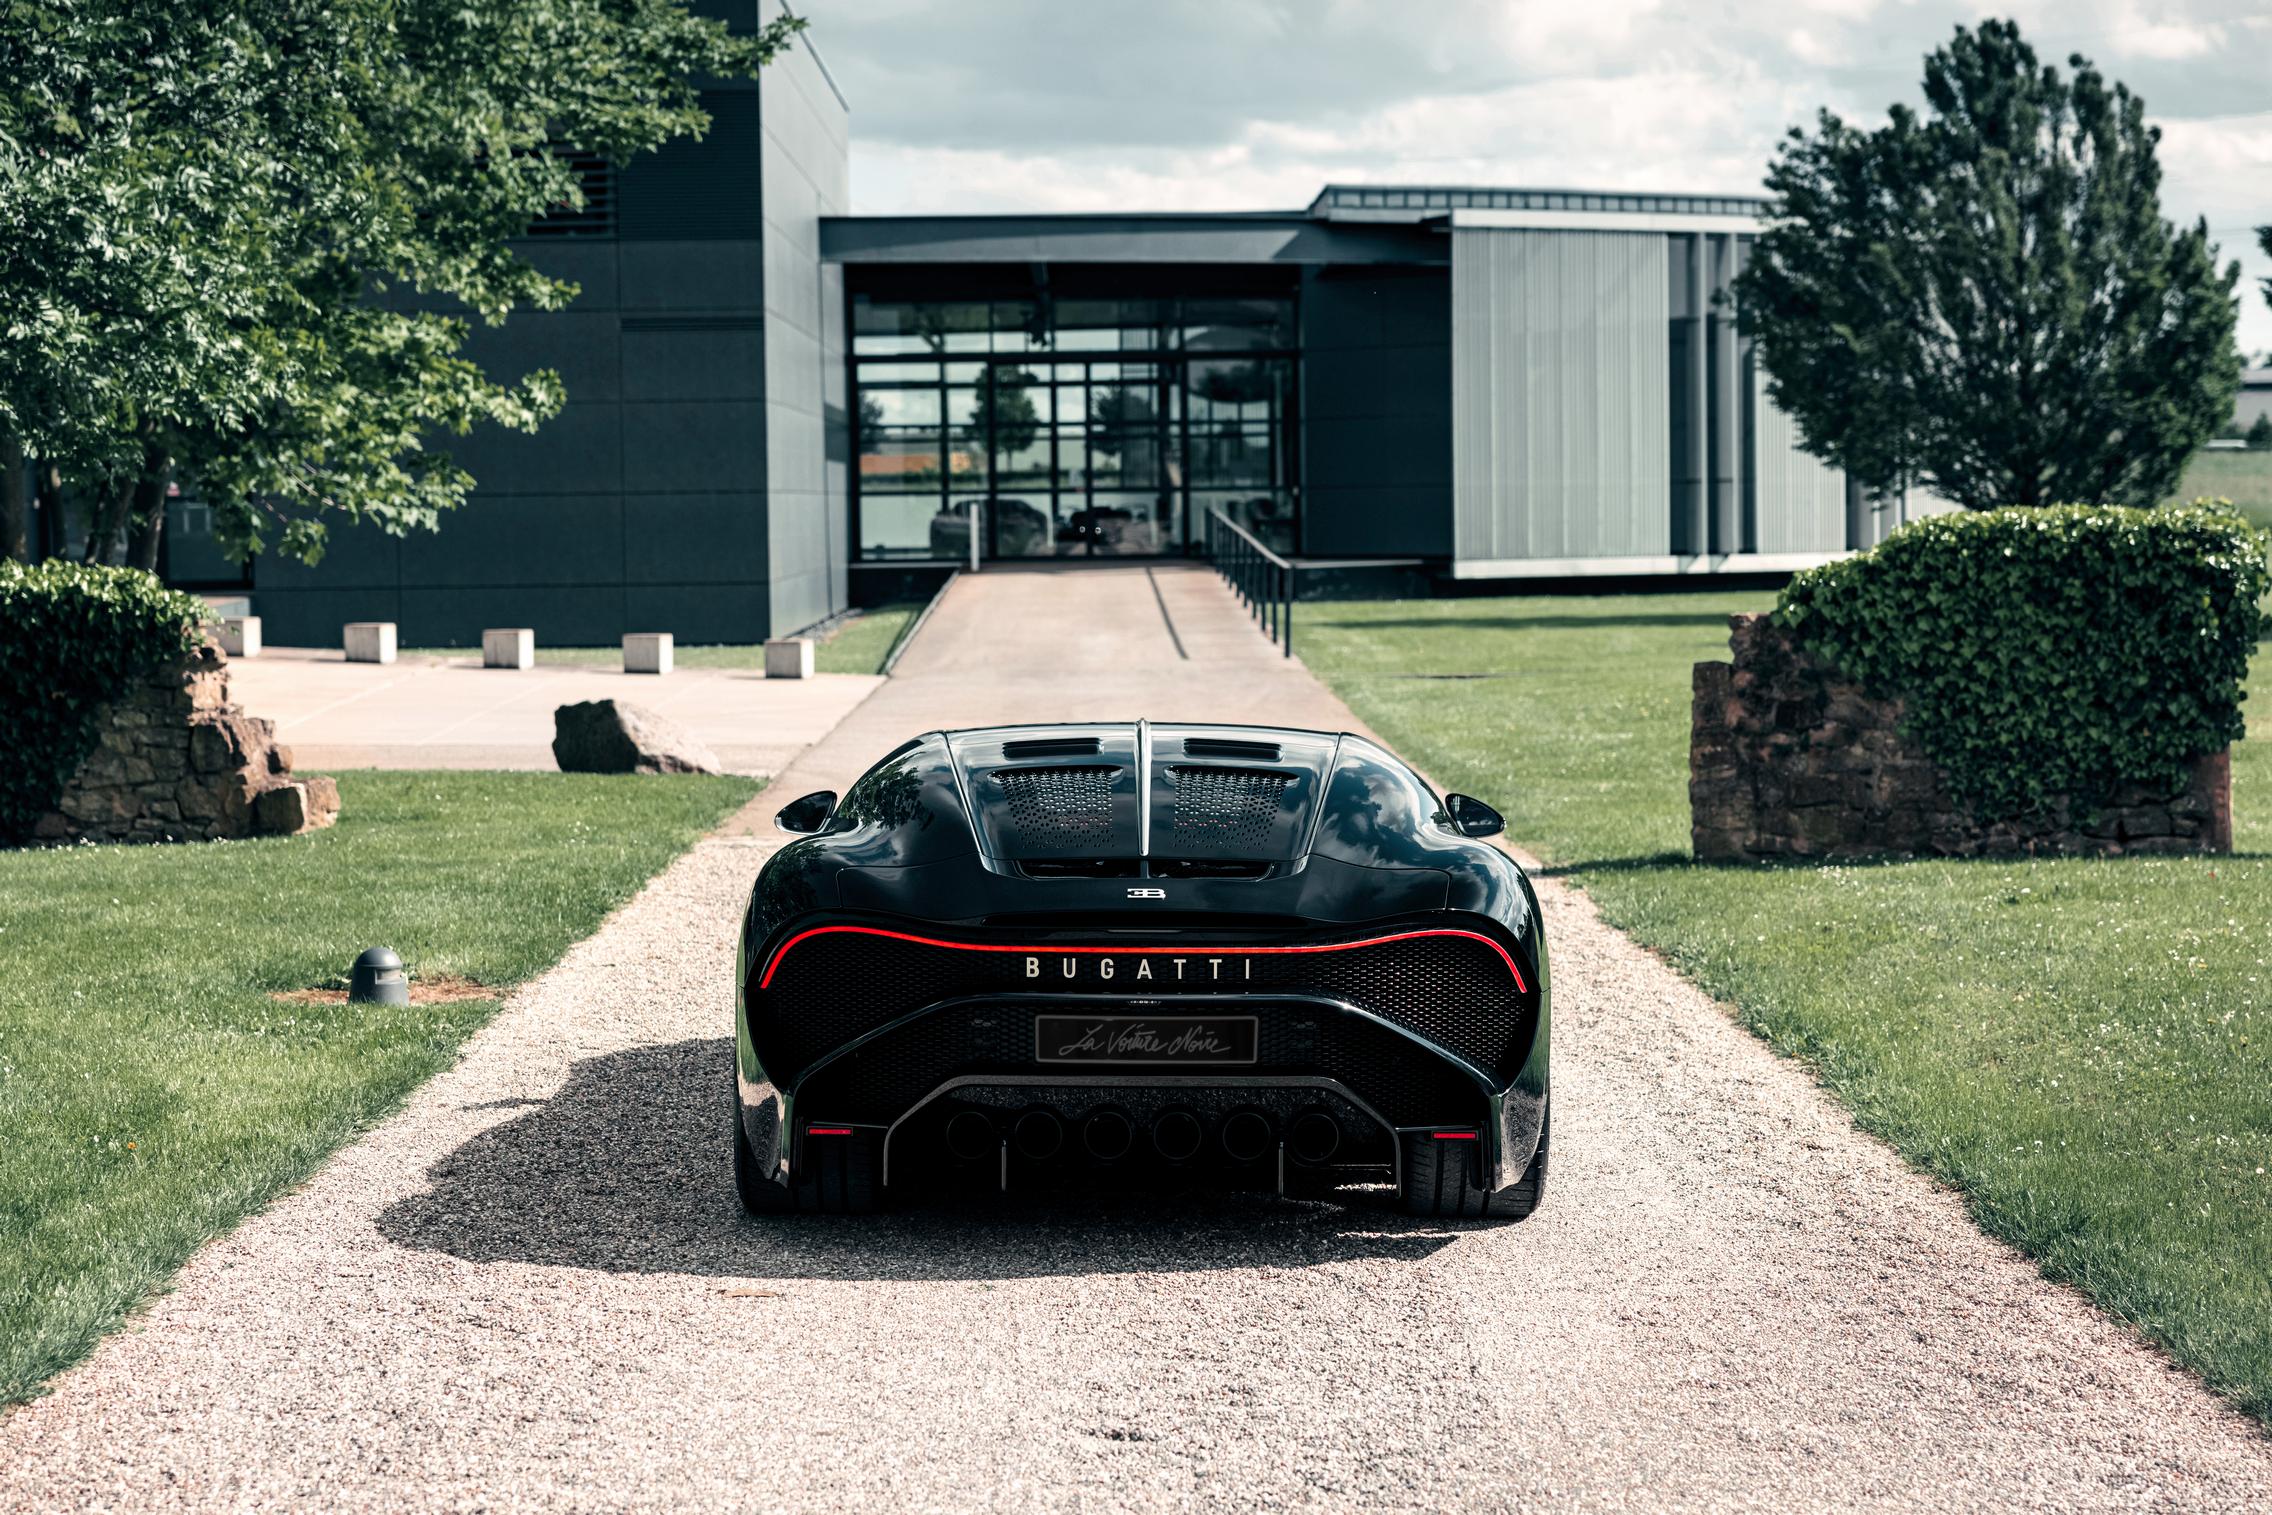 Bugatti La Voiture Noire rear